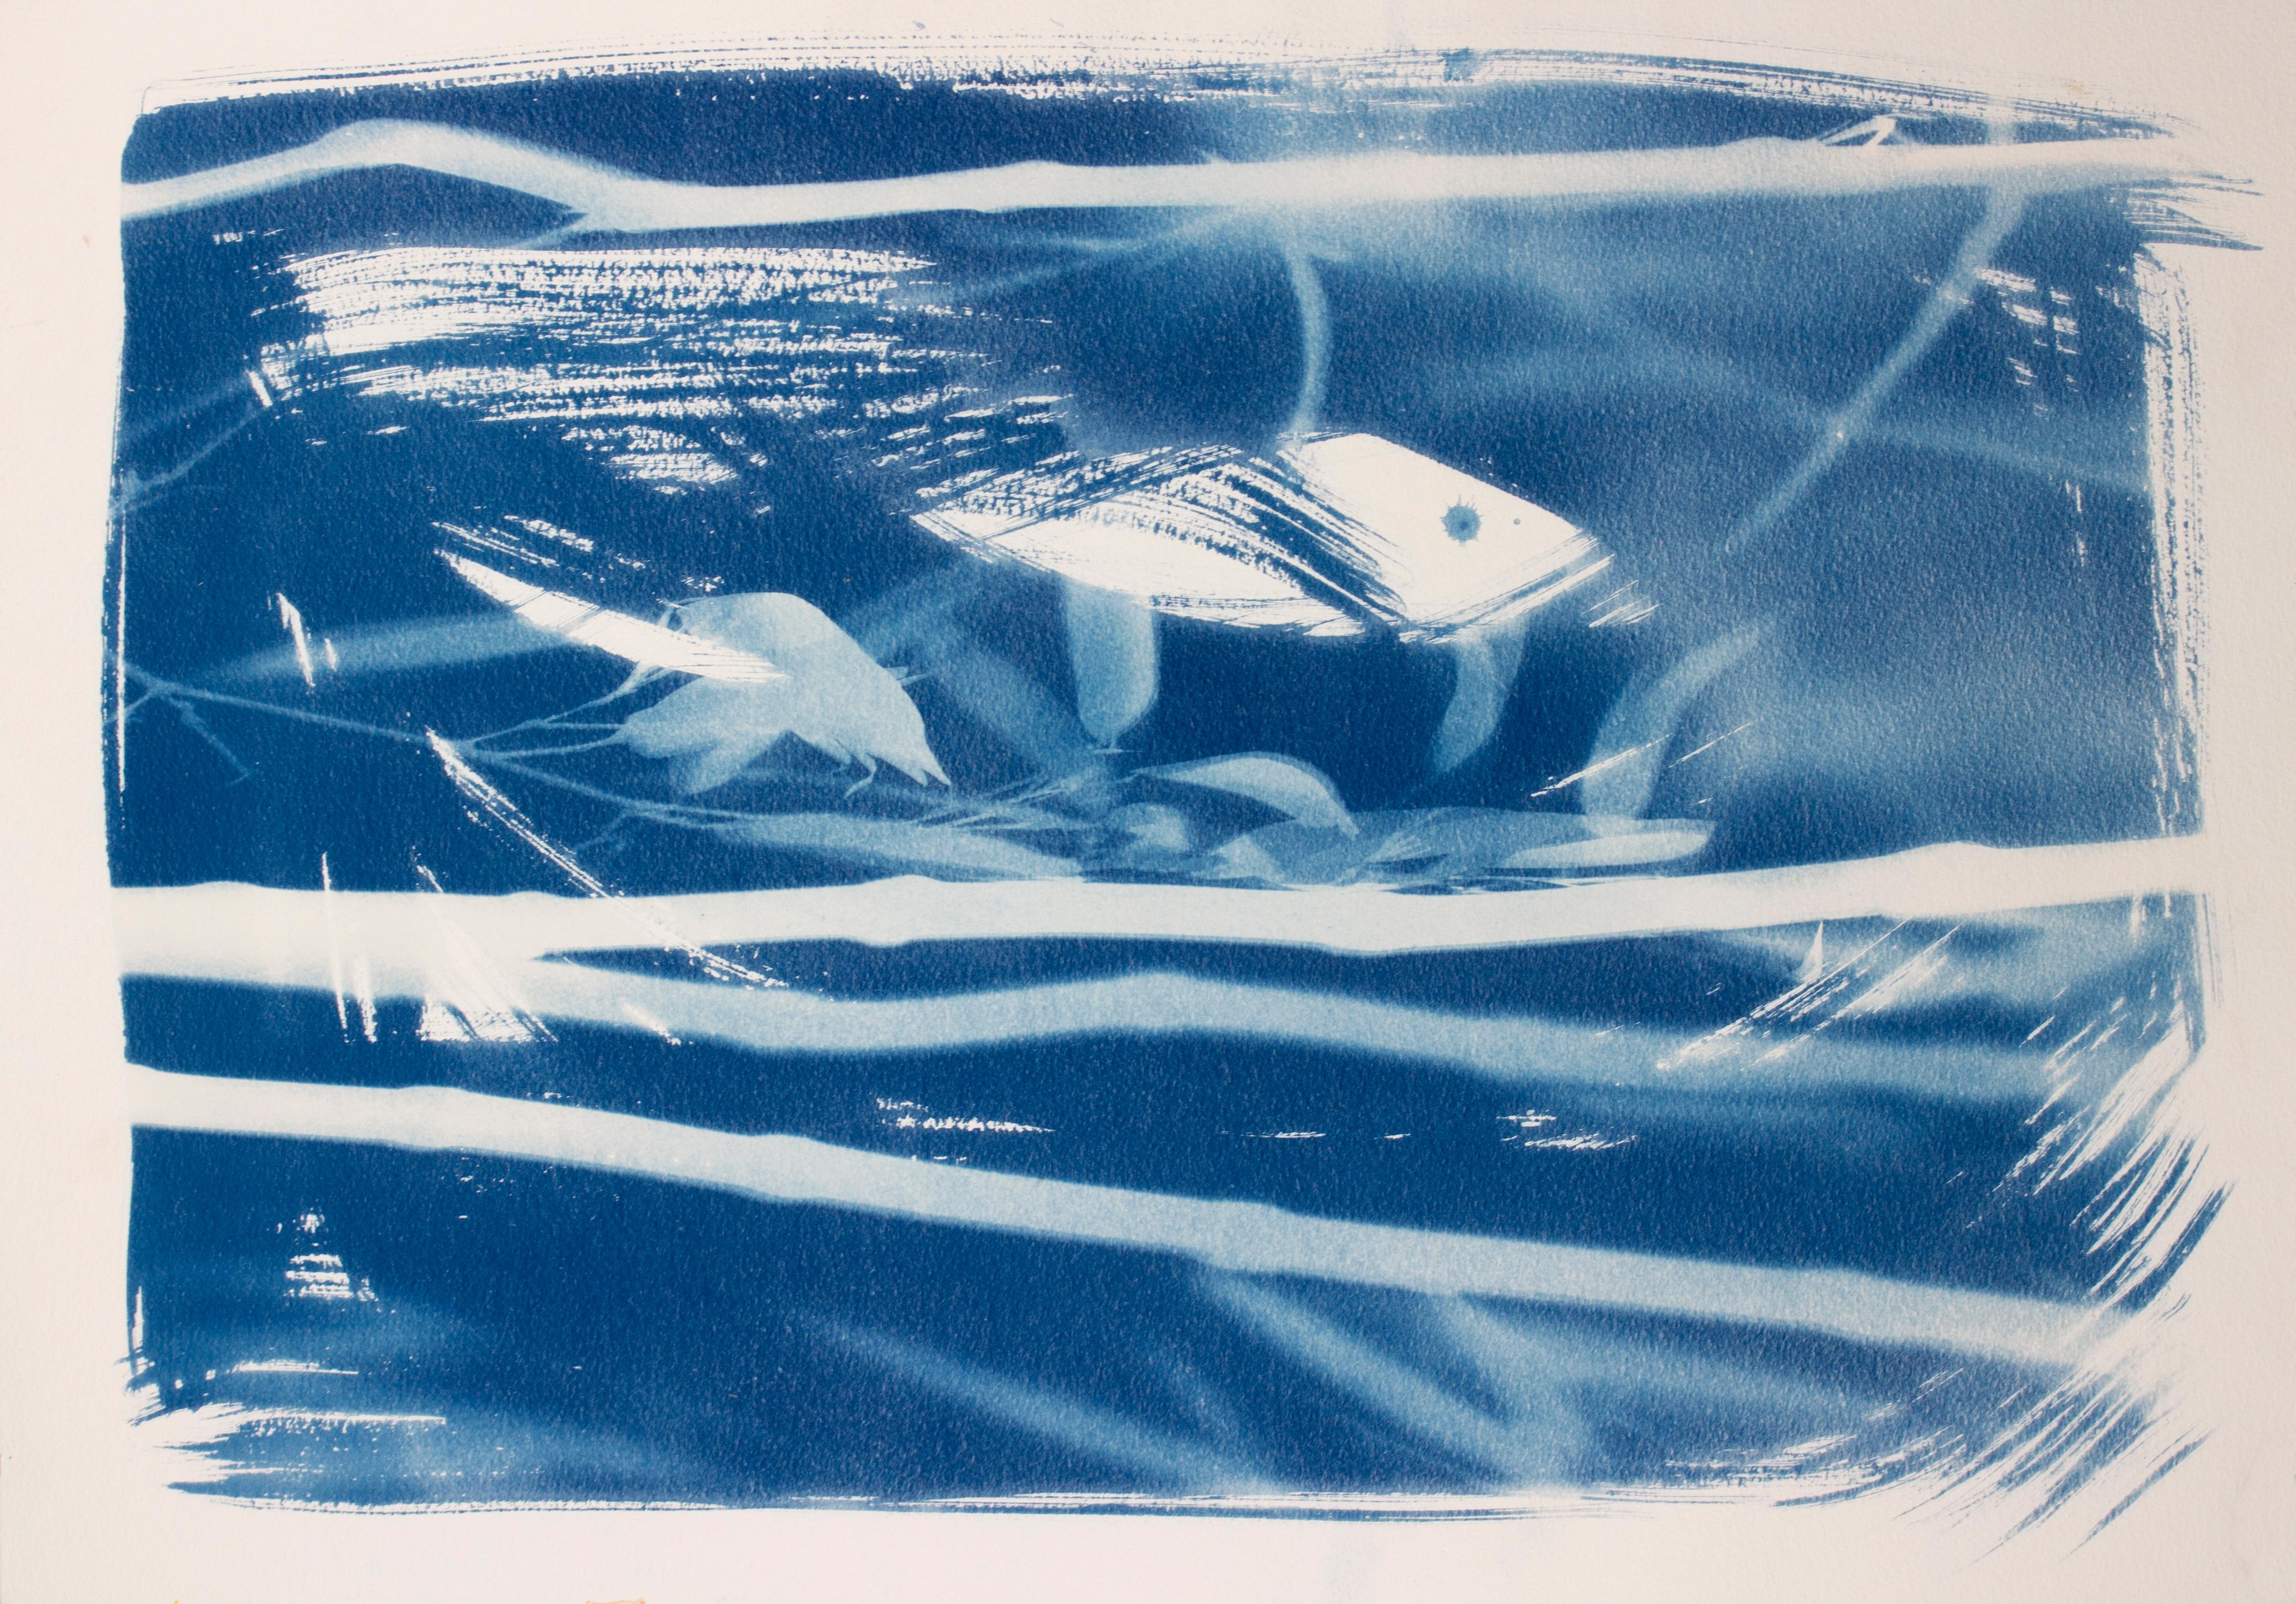 Abstract Painting Sophia Milligan - Réflexions sur Pasadena". Peinture conceptuelle et botanique en bleu et blanc